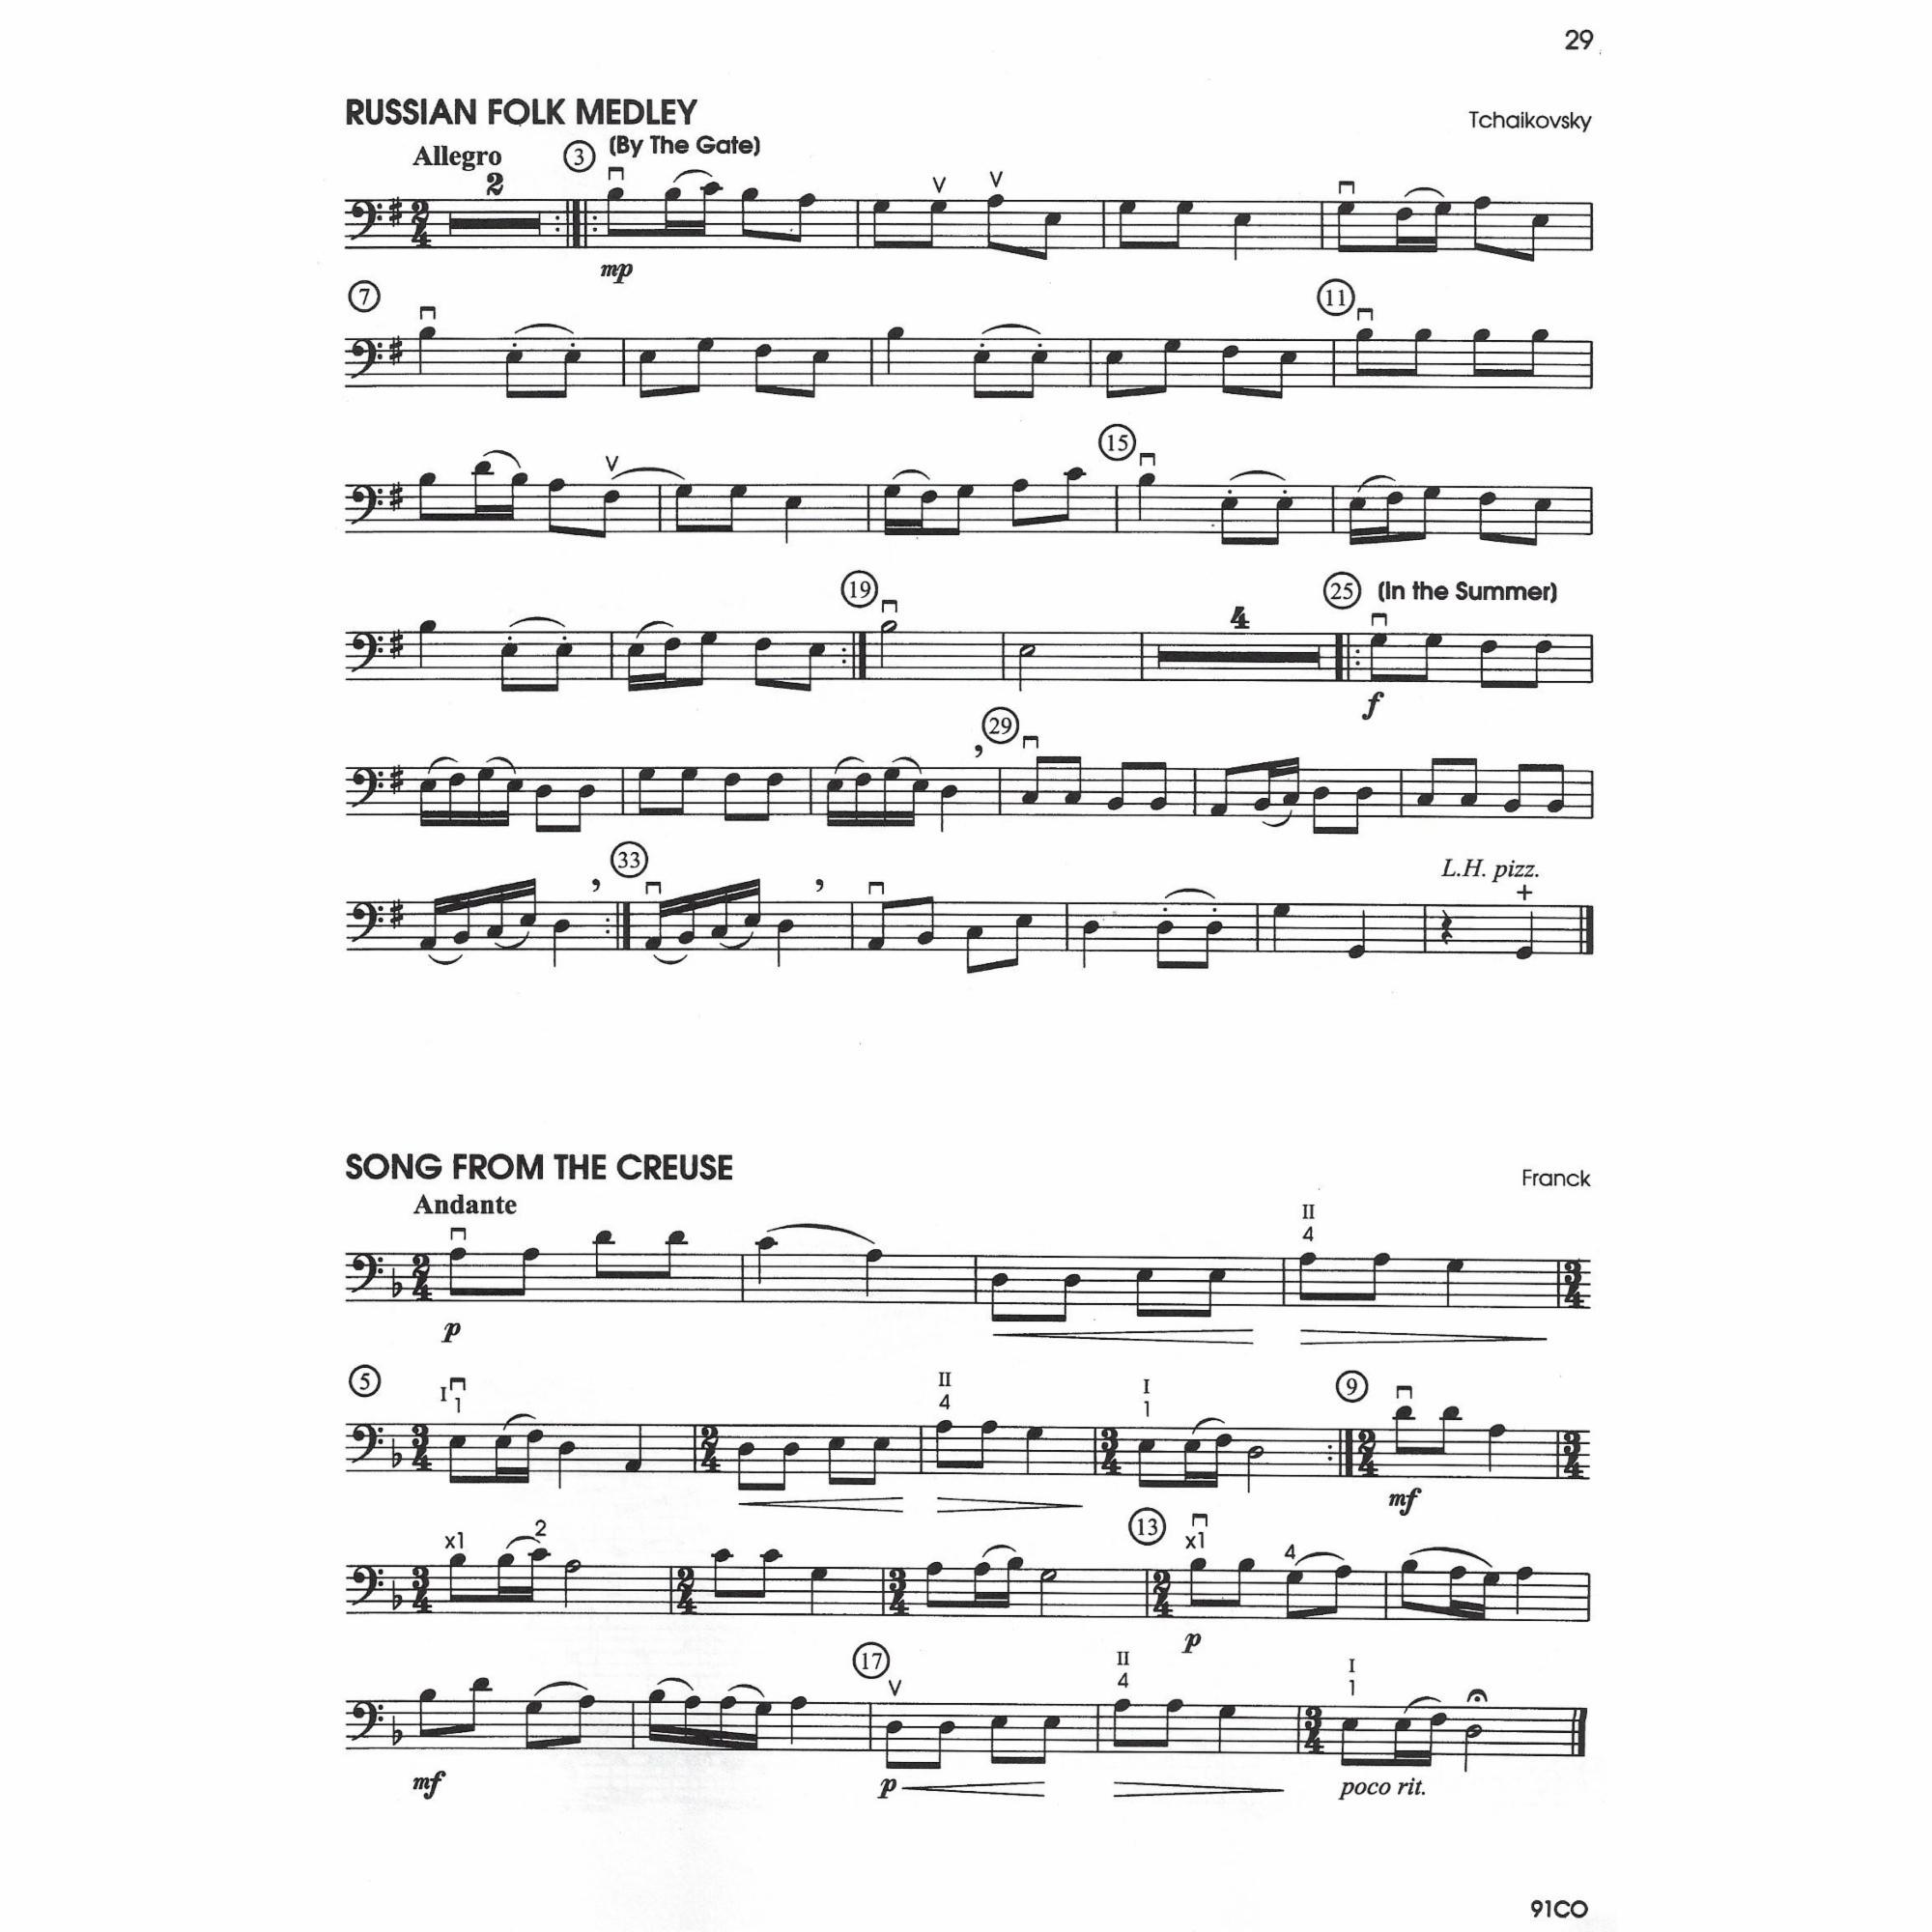 Sample: Cello (Pg. 29)